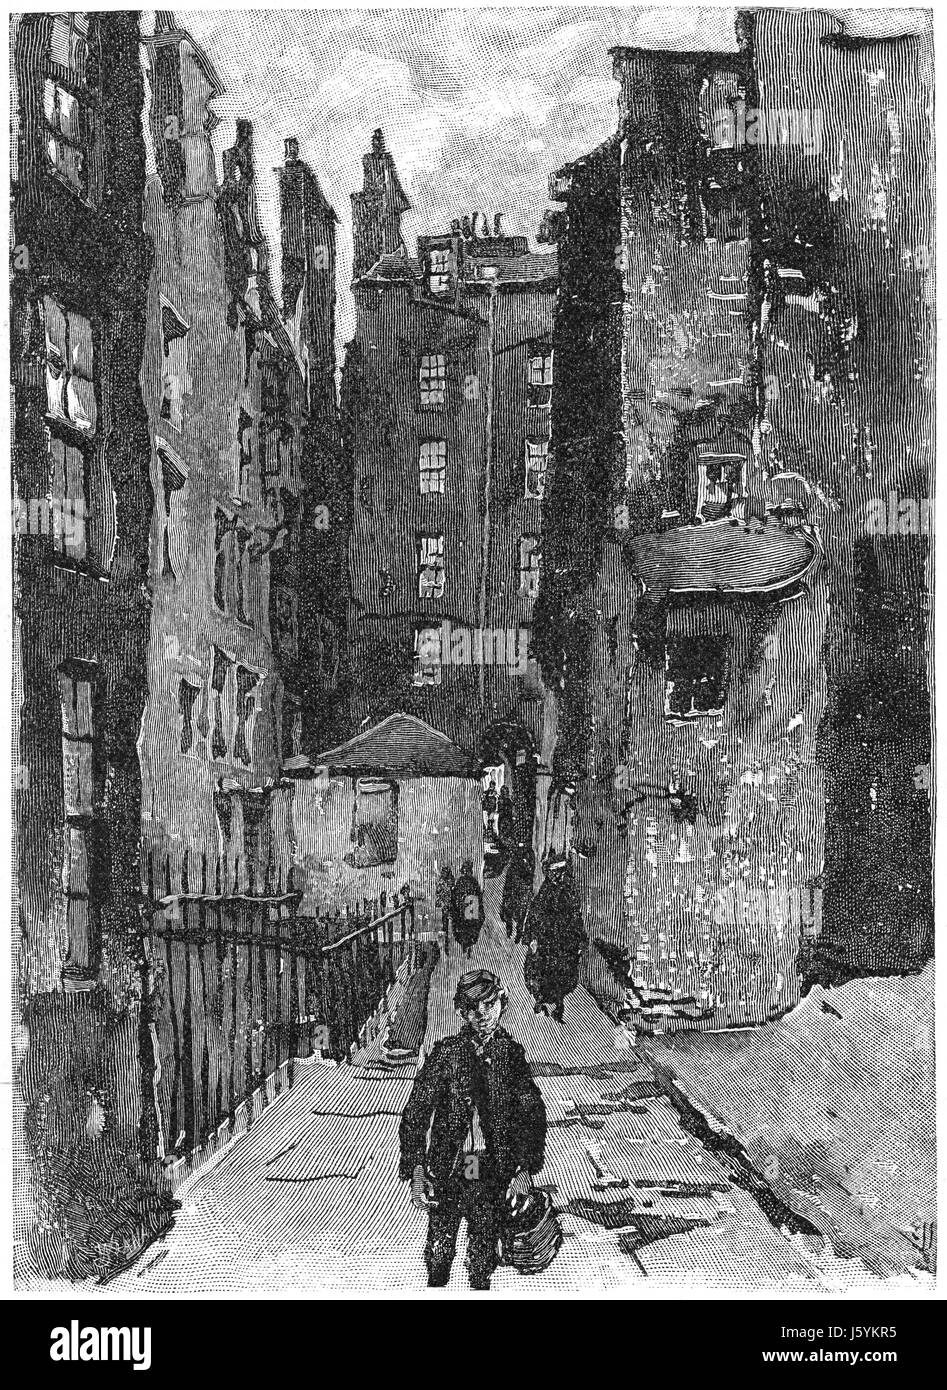 501 High Street, James Court, Edinburgh, Schottland, neue monatliche Zeitschrift Harpers, Illustration, März 1891 Stockfoto